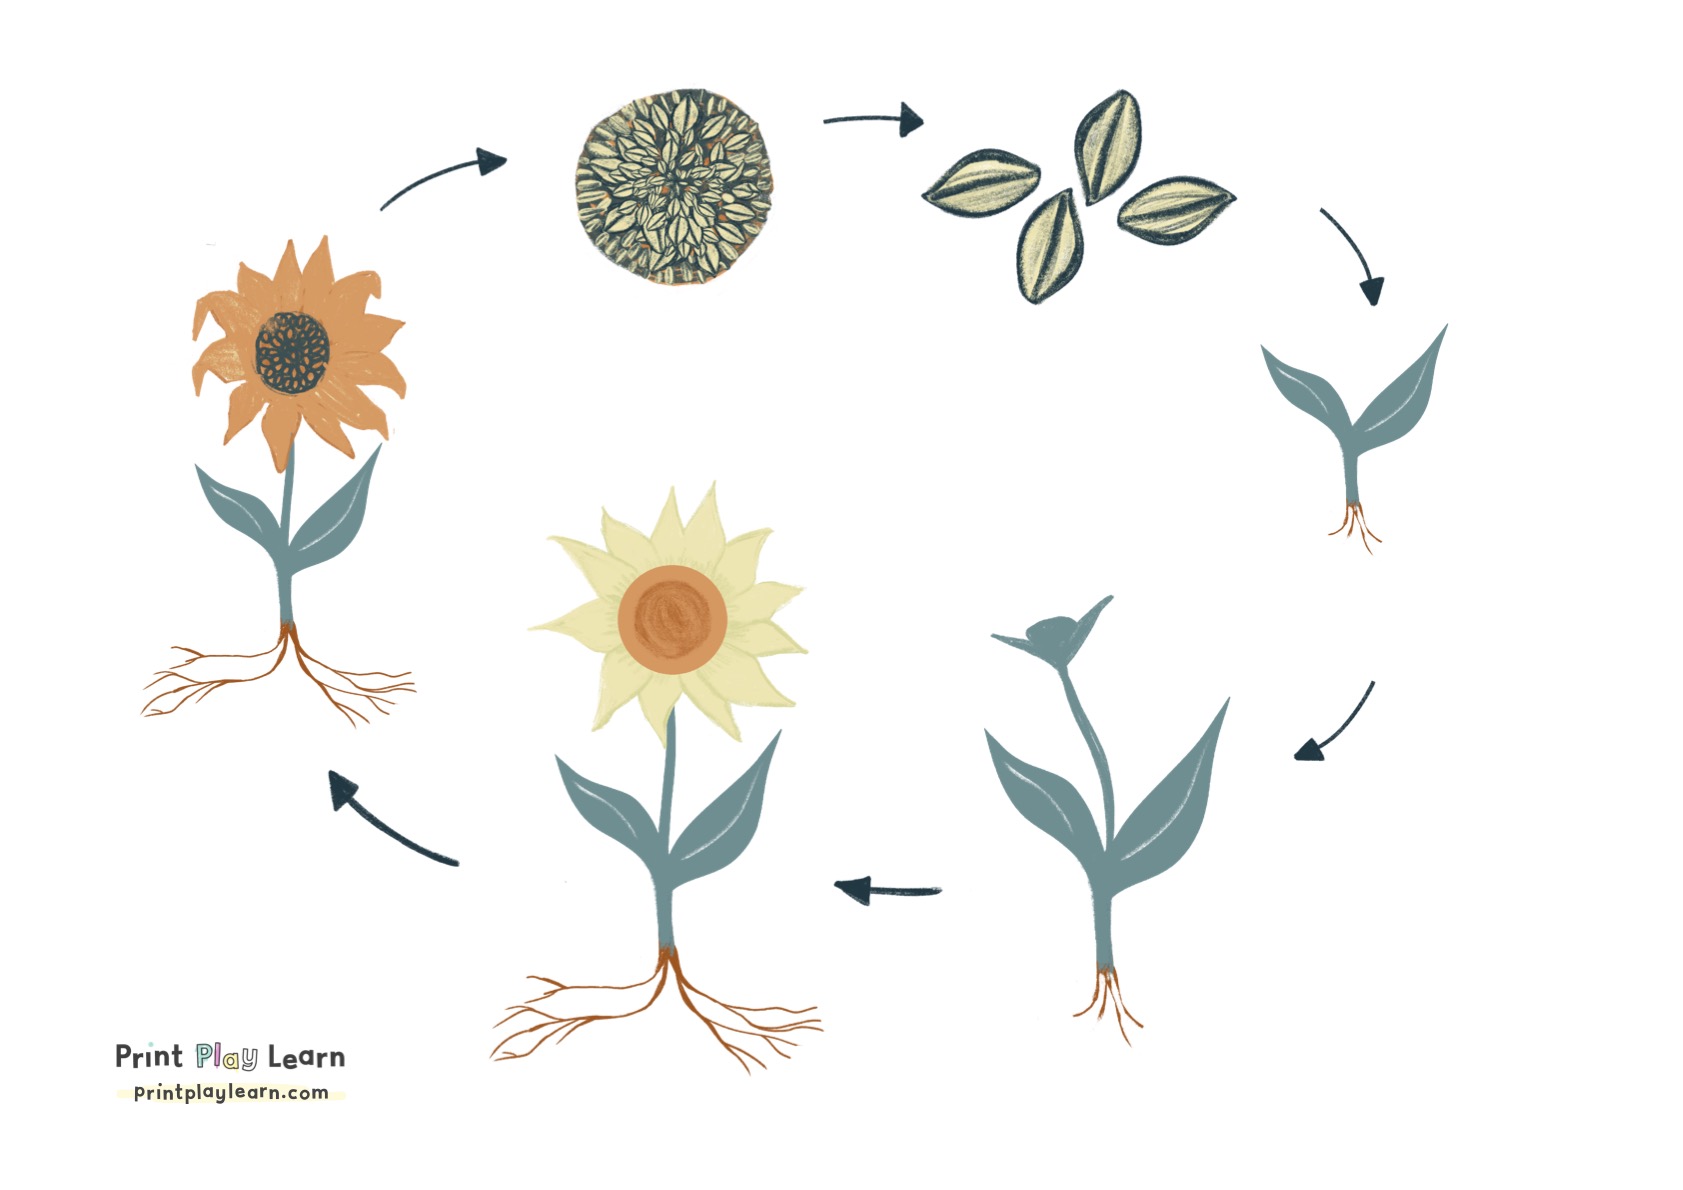 sunflower life cycle printable